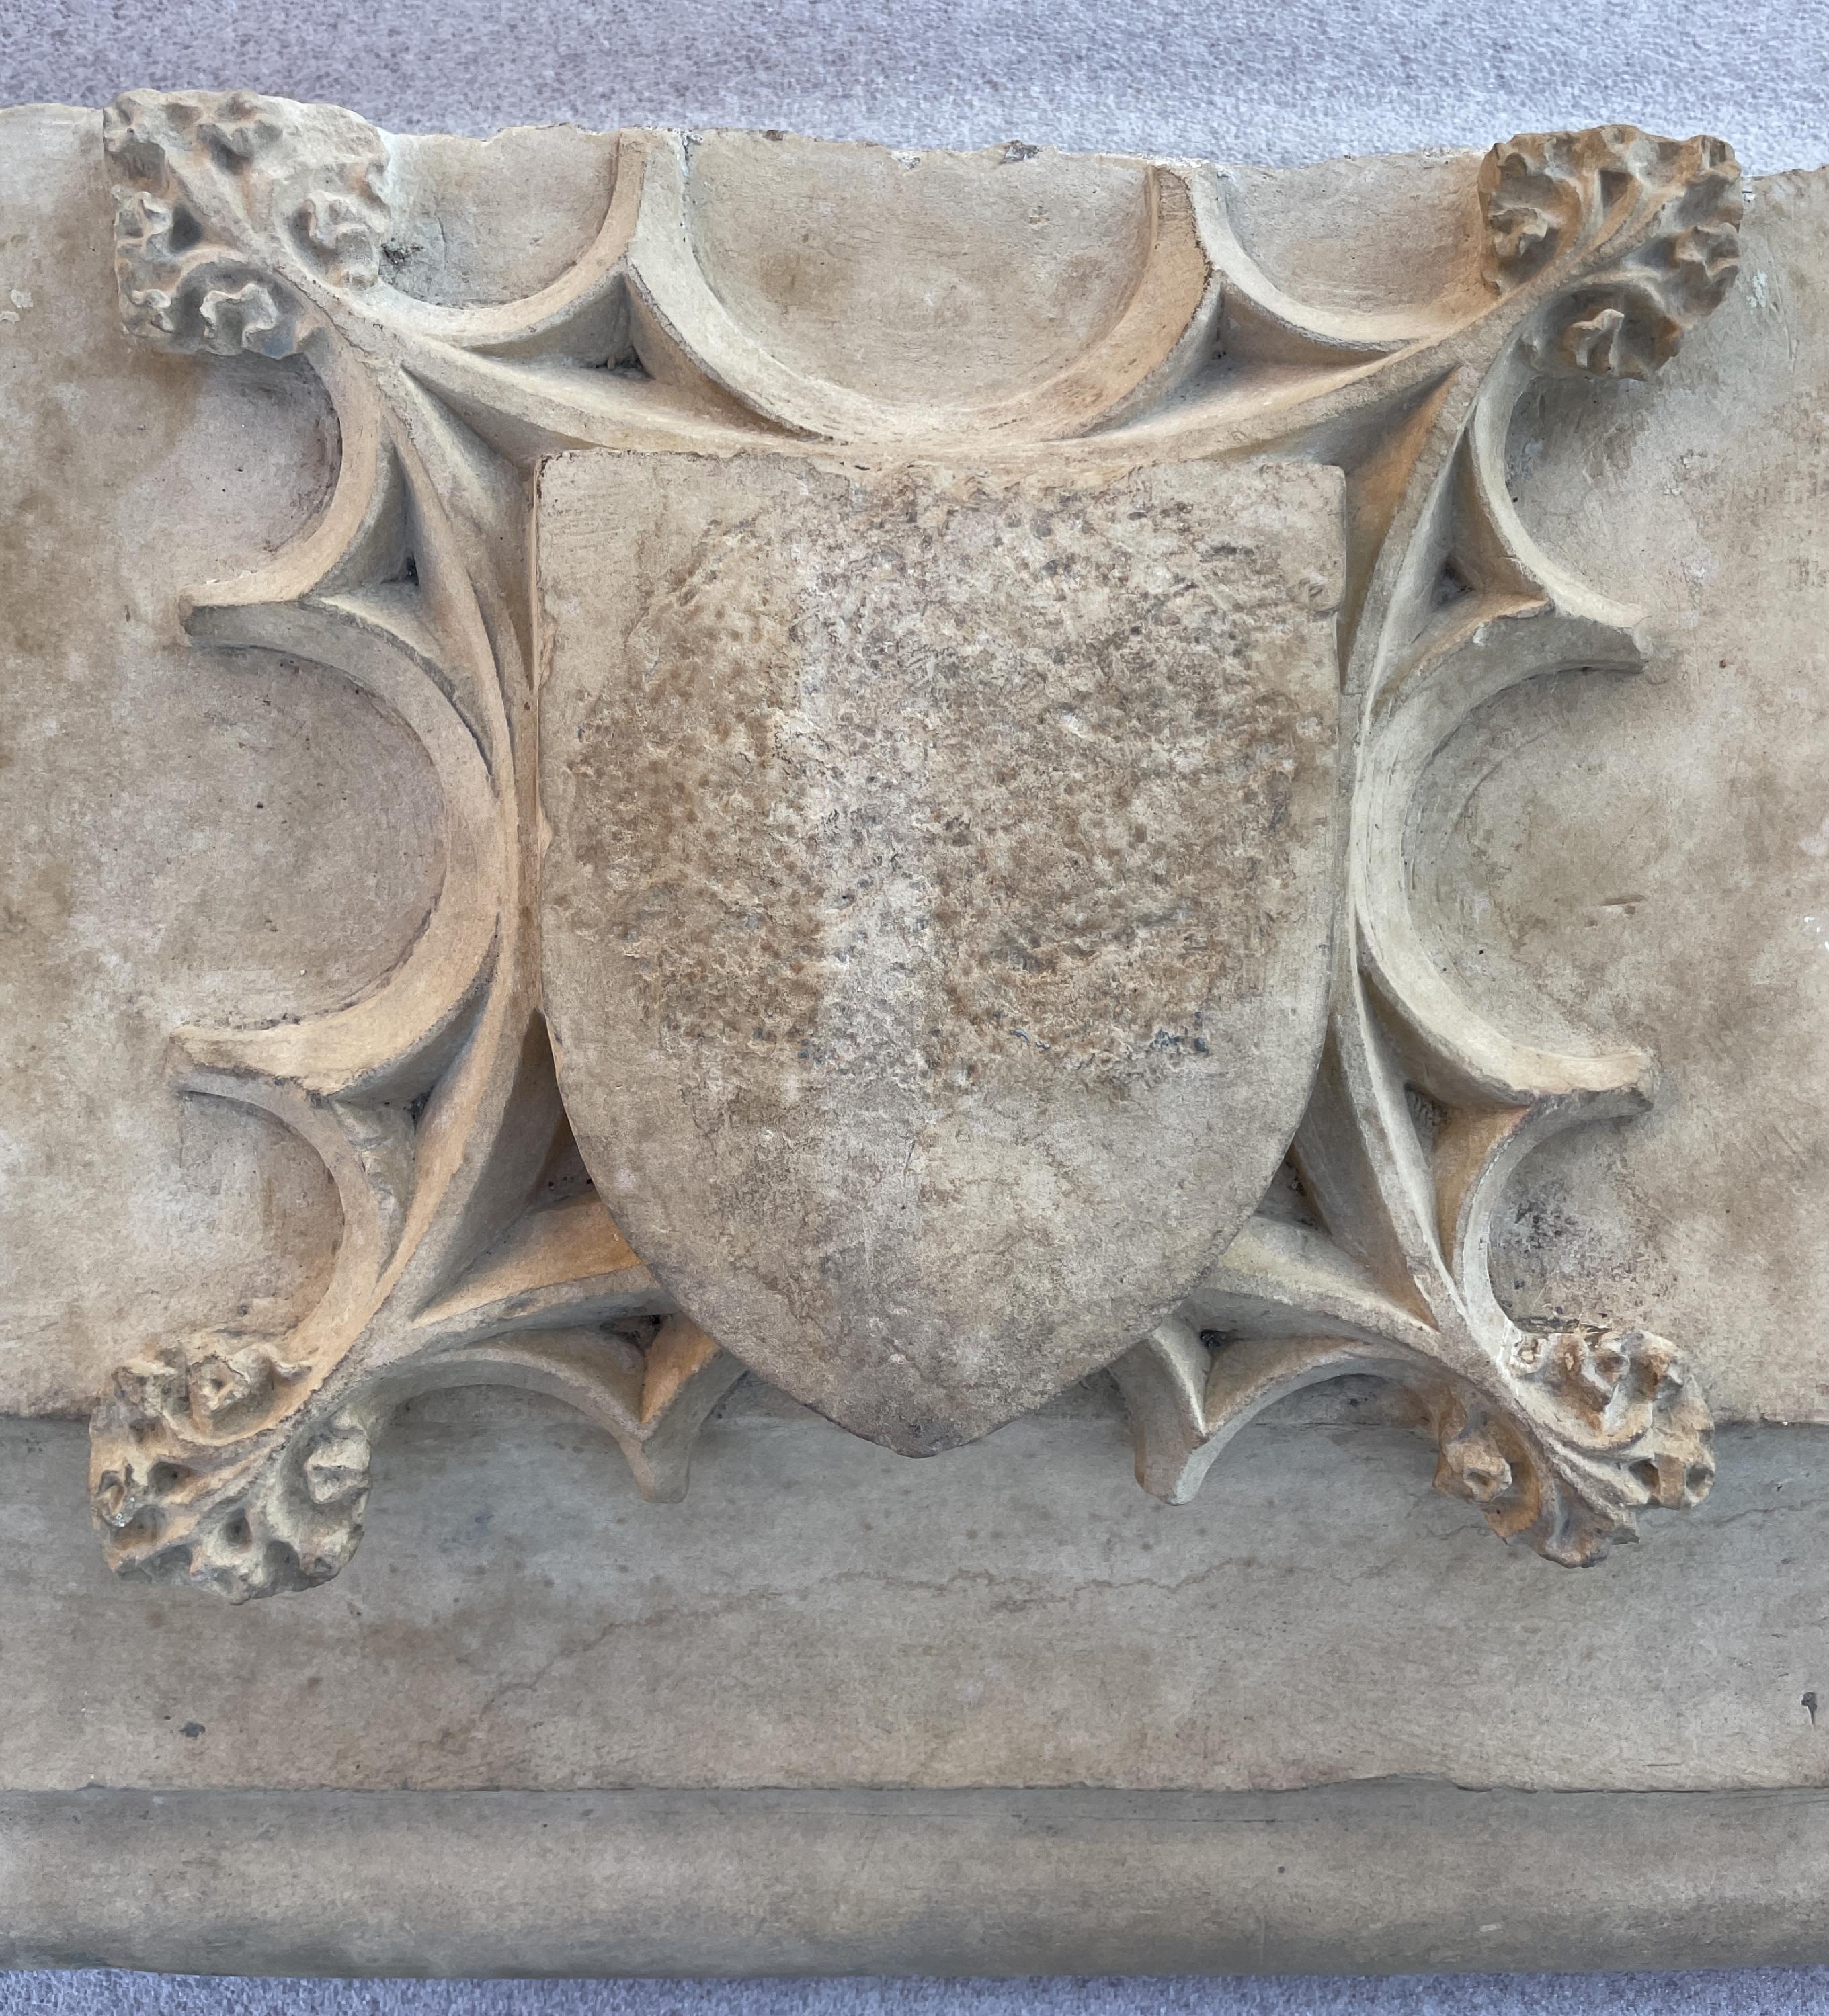 Dieser monumentale Kaminsims wurde im 17. Jahrhundert aus Stein gefertigt.
Das profilierte Gebälk, das mit einem Wappen in gotischem Dekor verziert ist, ragt aus den Türpfosten heraus.